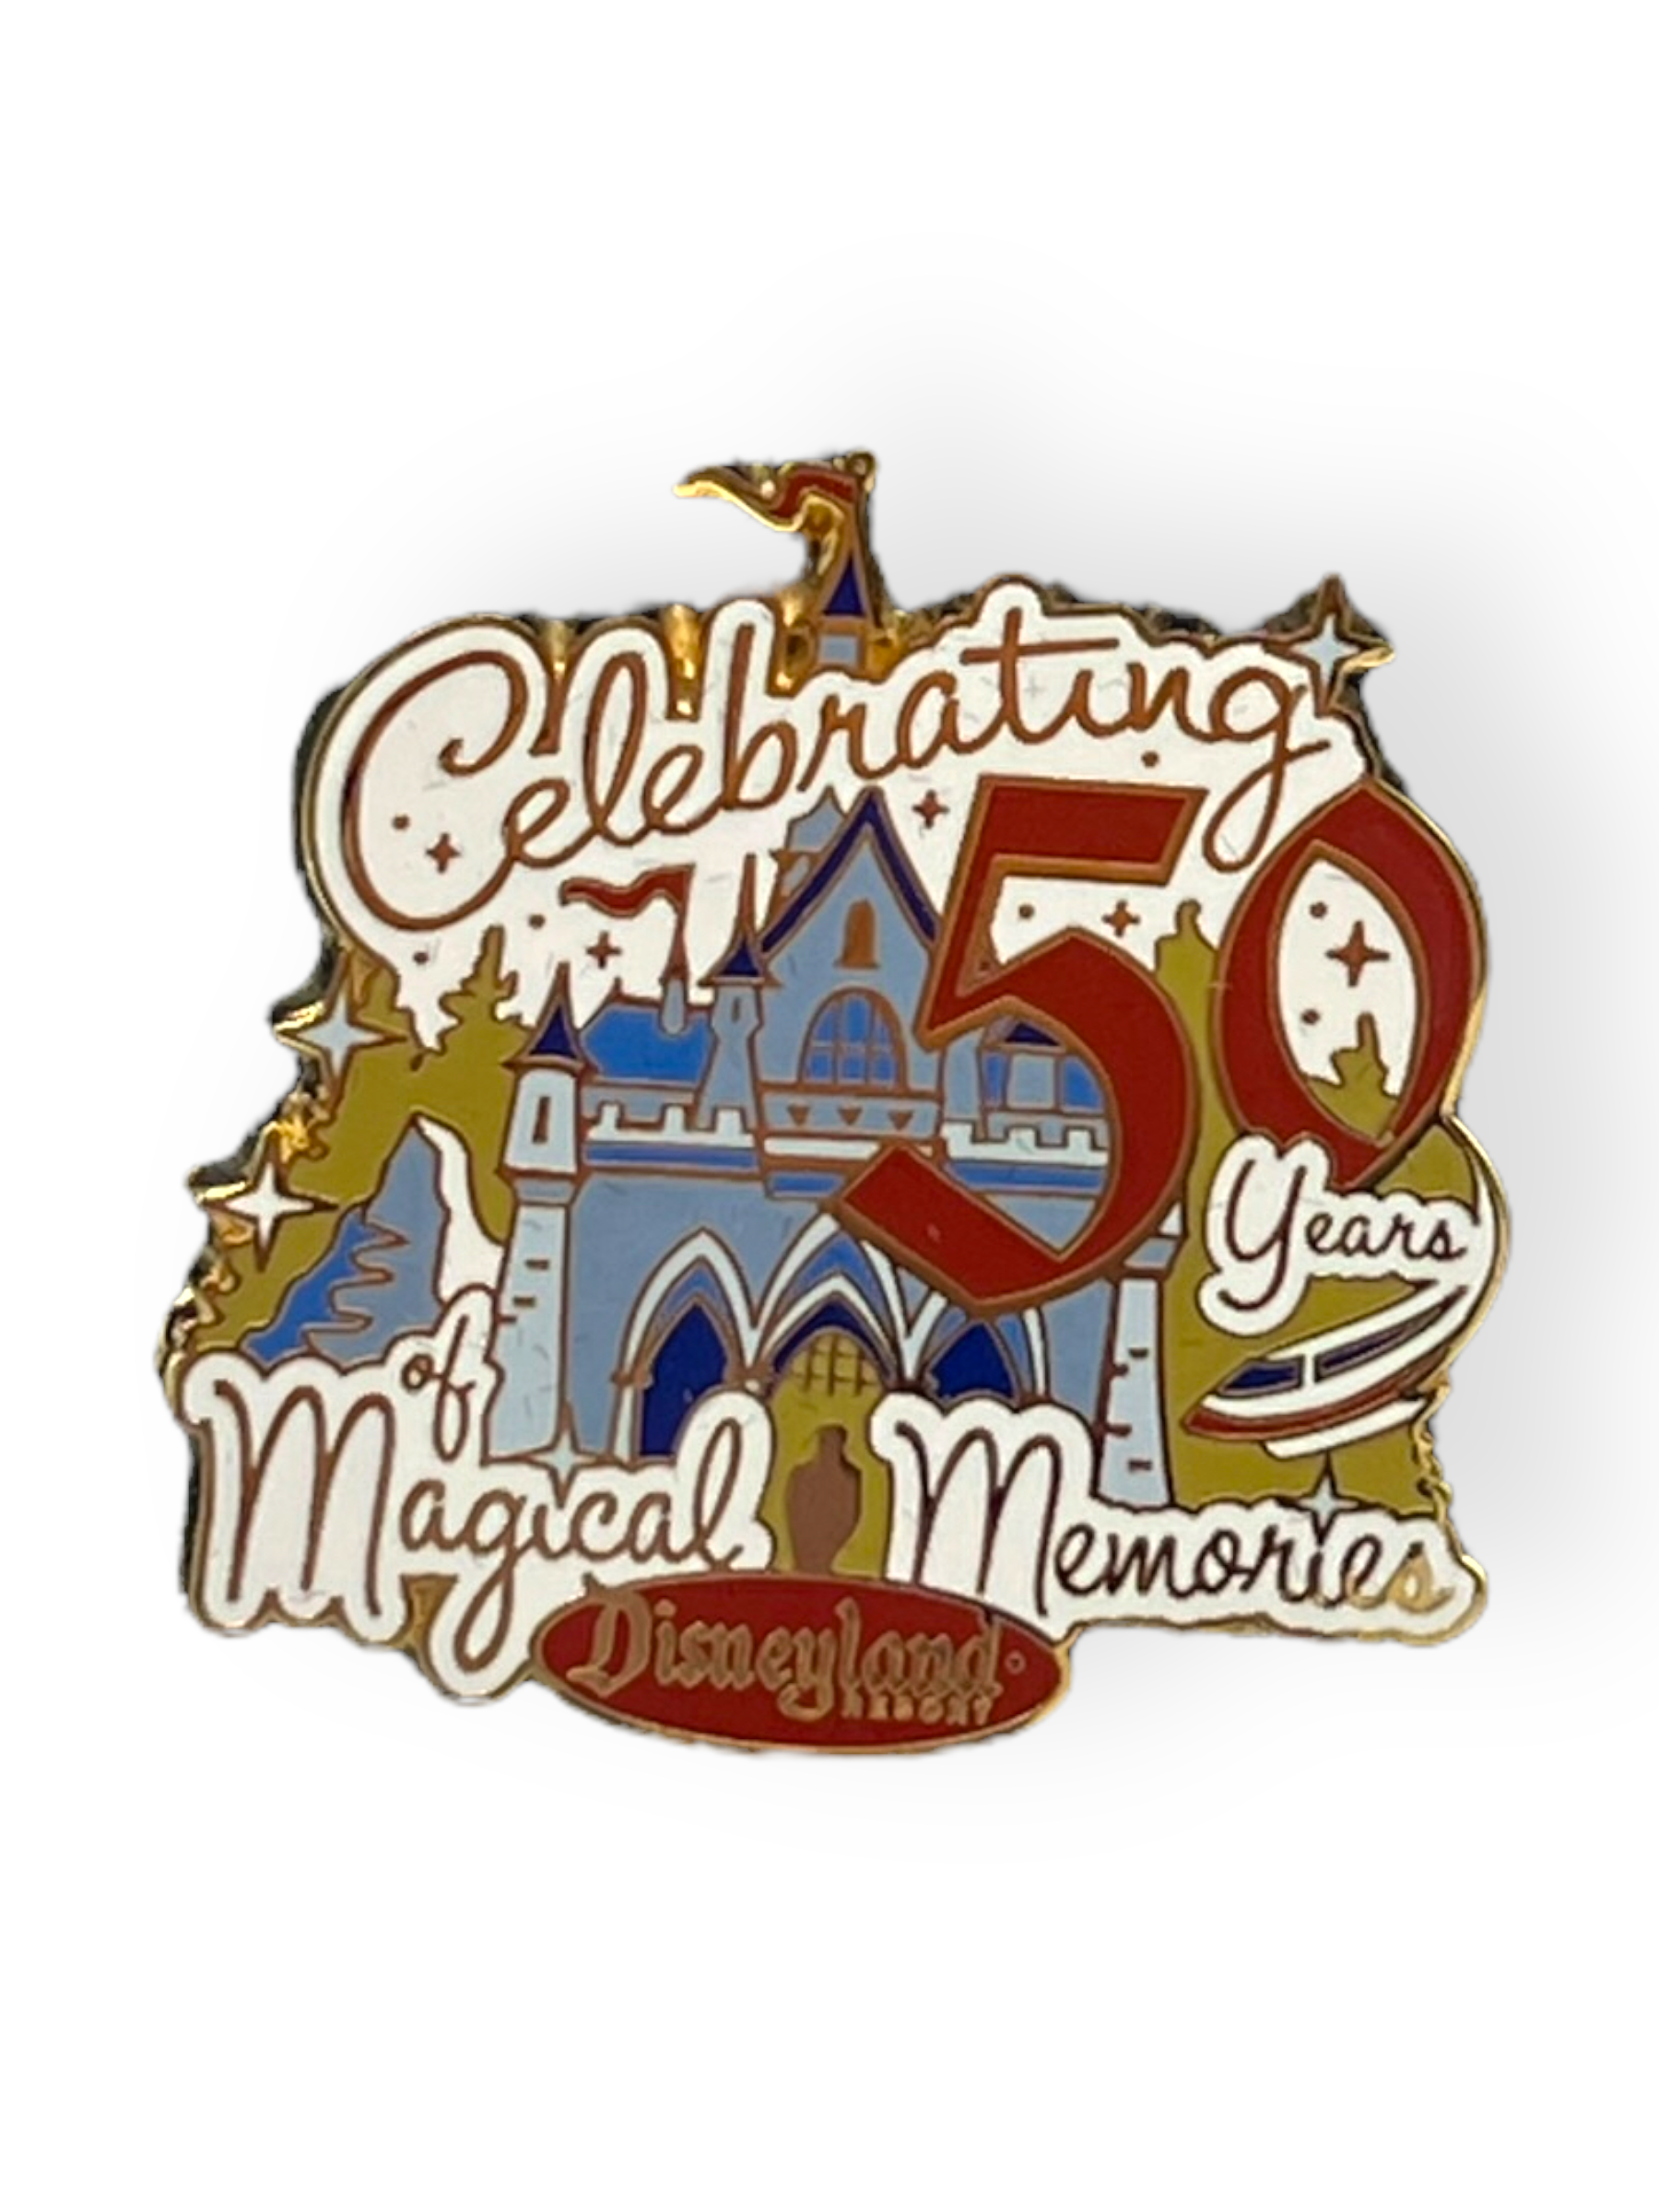 Celebrating 50 Years of Magical Memories Pin